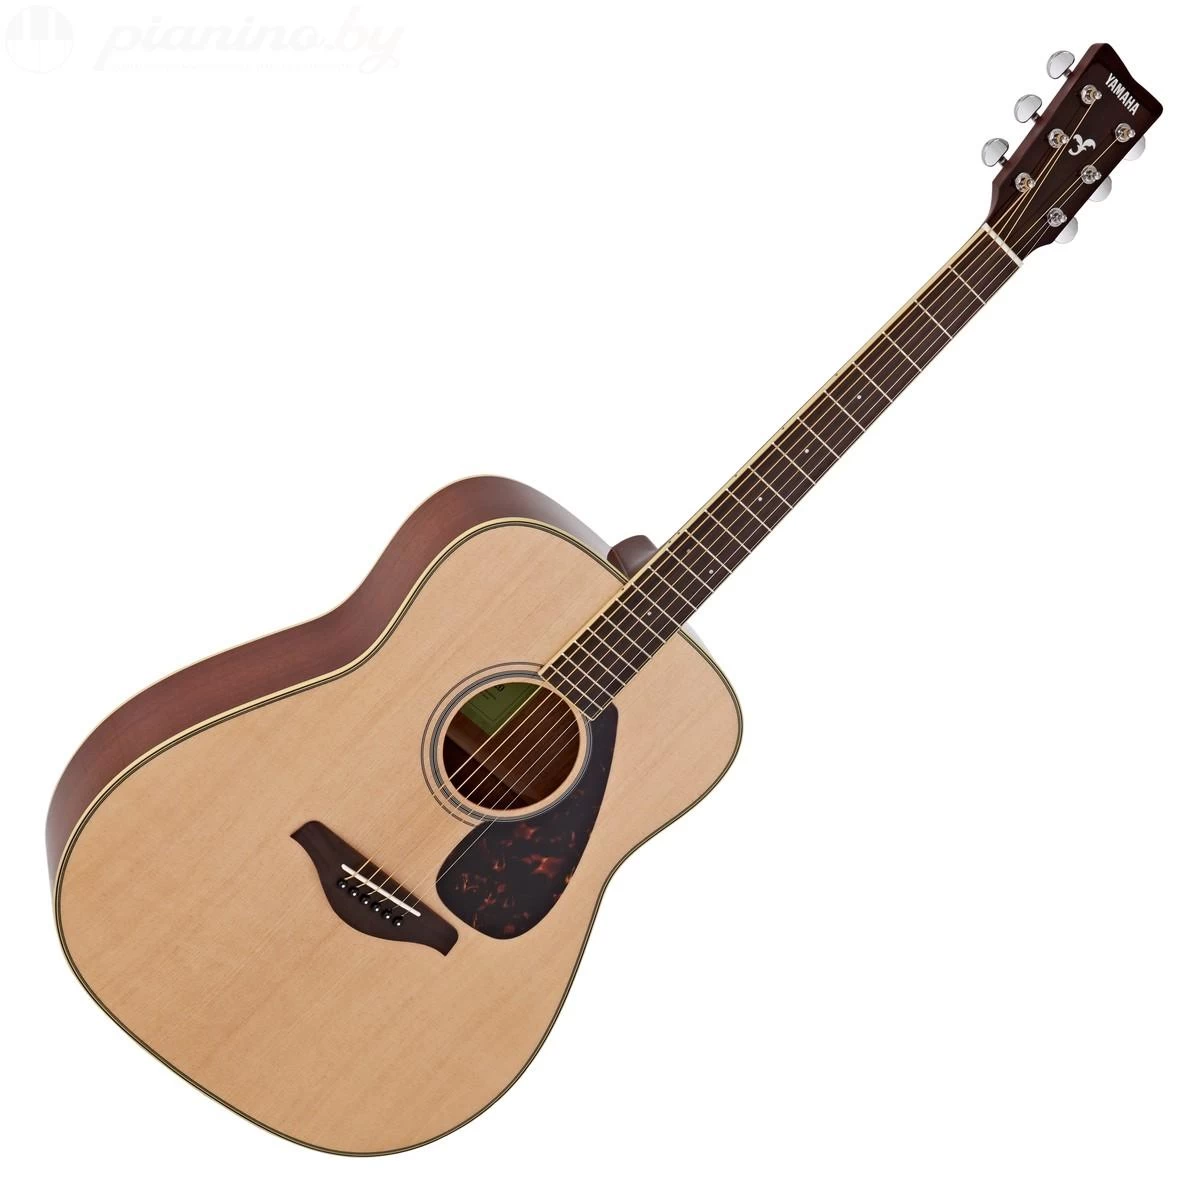 Гитара акустическая Yamaha FG820 NT купить в Минске, цена и отзывы